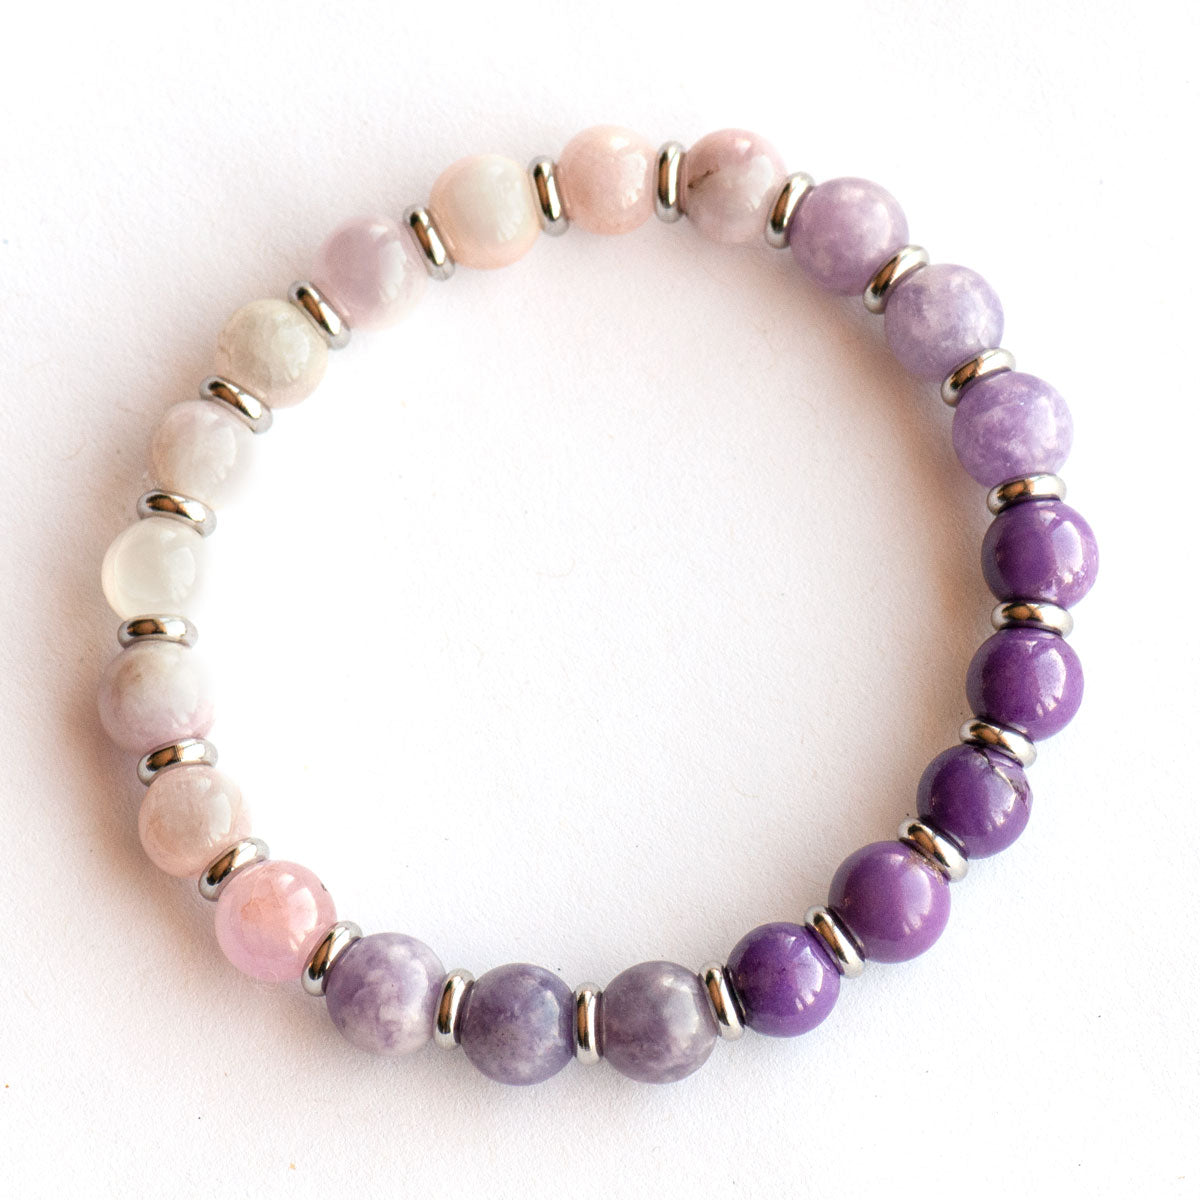 Handmade gemstone bracelet with phosphosiderite, lepidolite, and kunzite purple gemstones